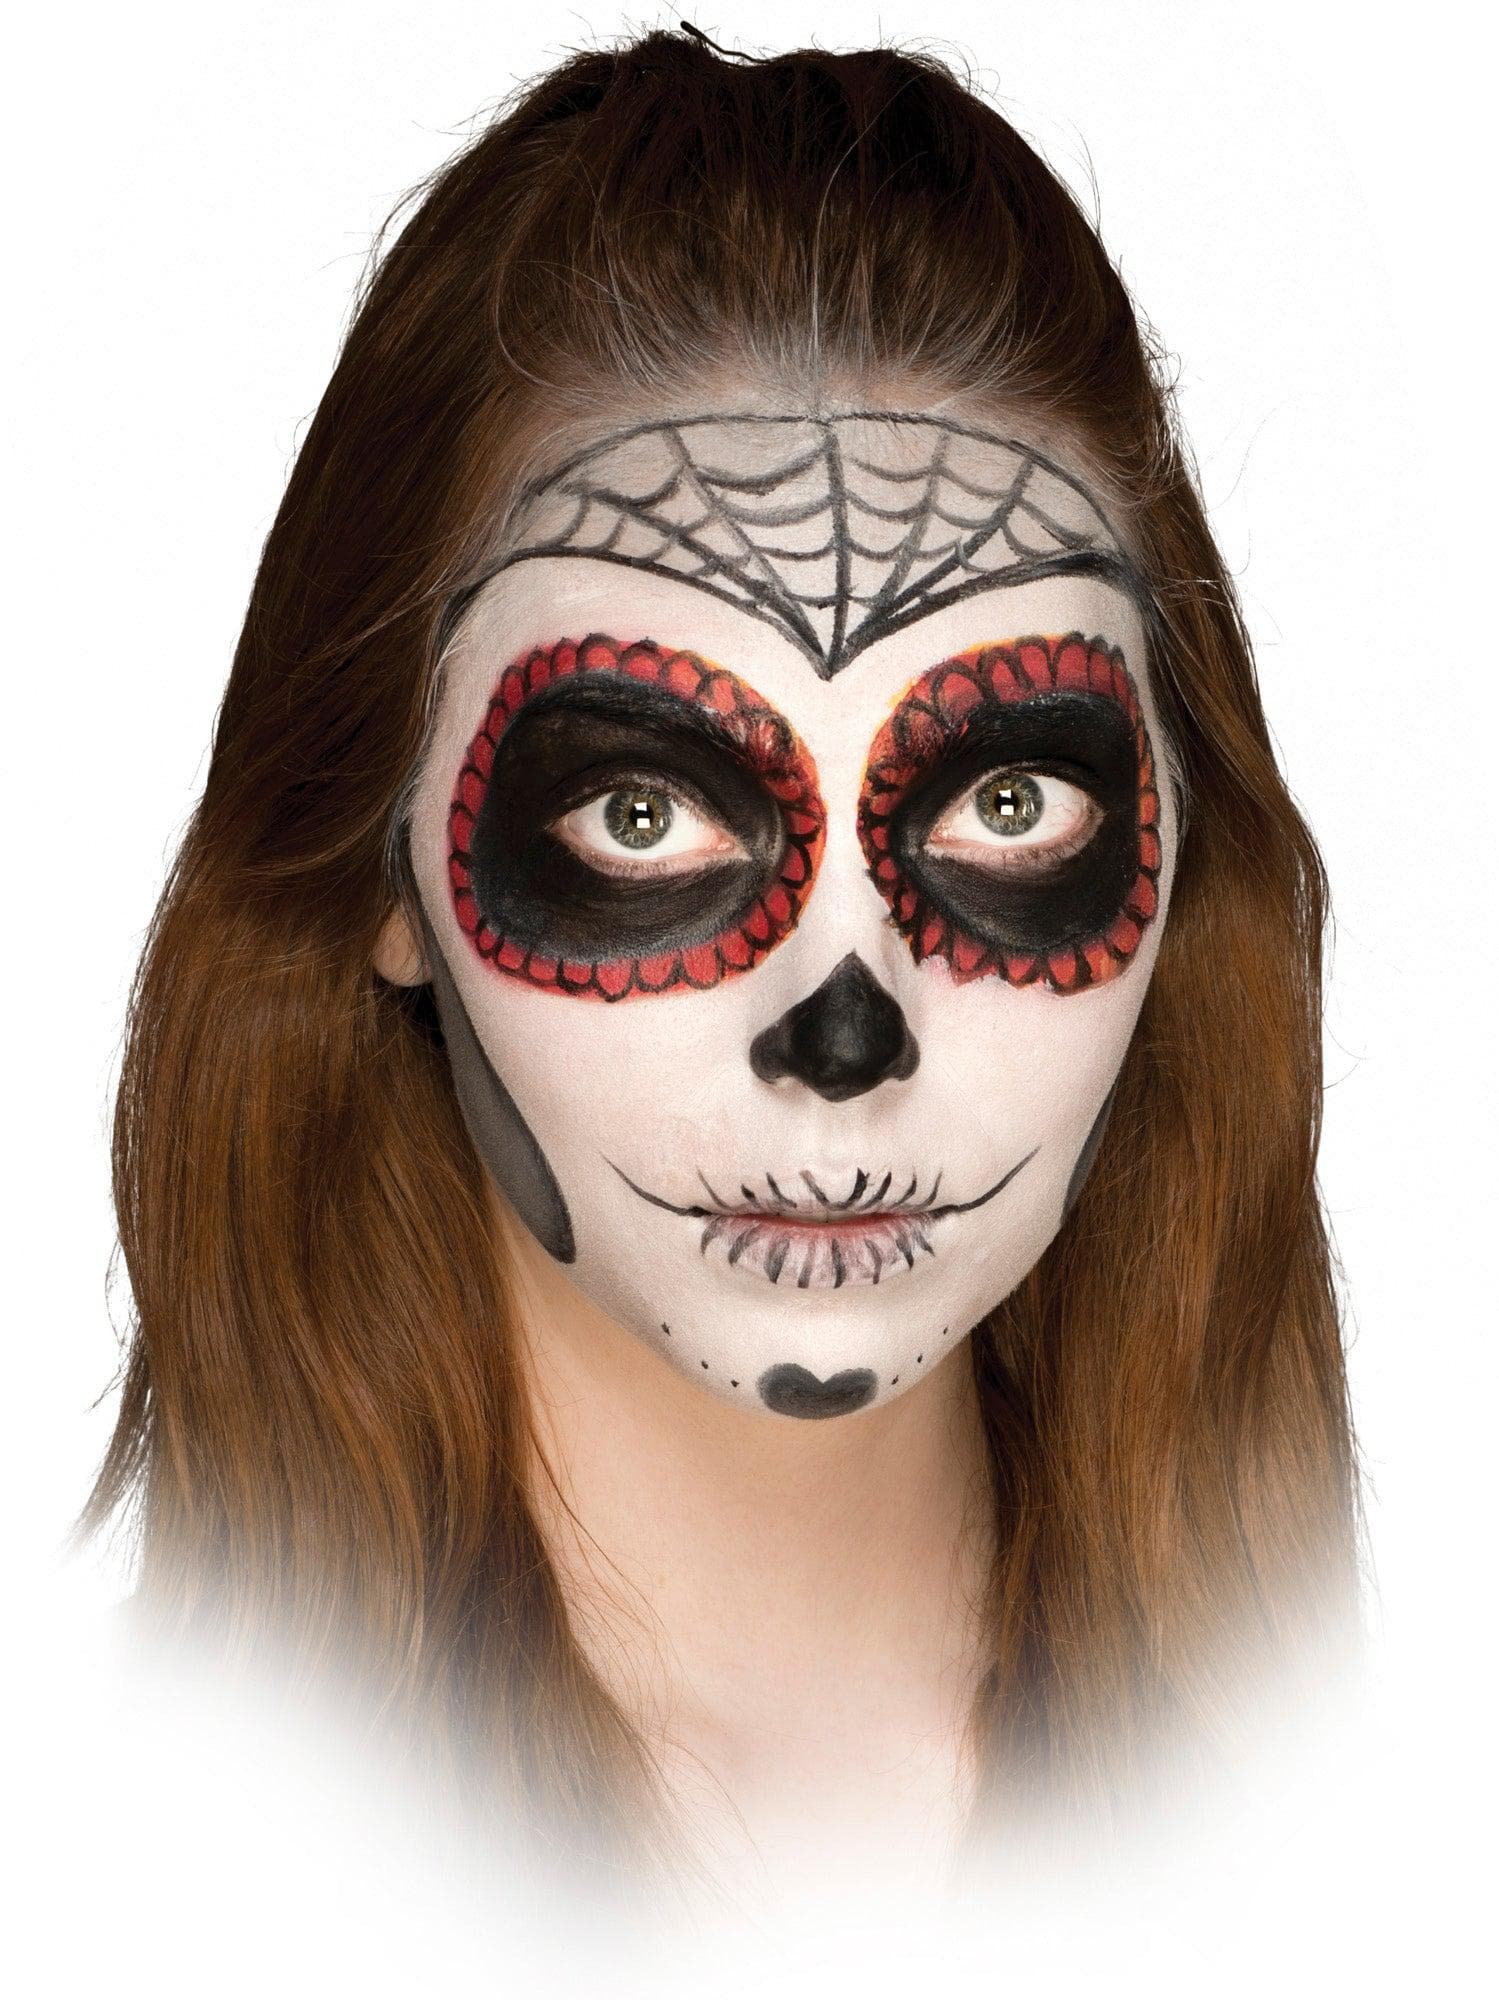 Classic Skull Face Makeup - costumes.com